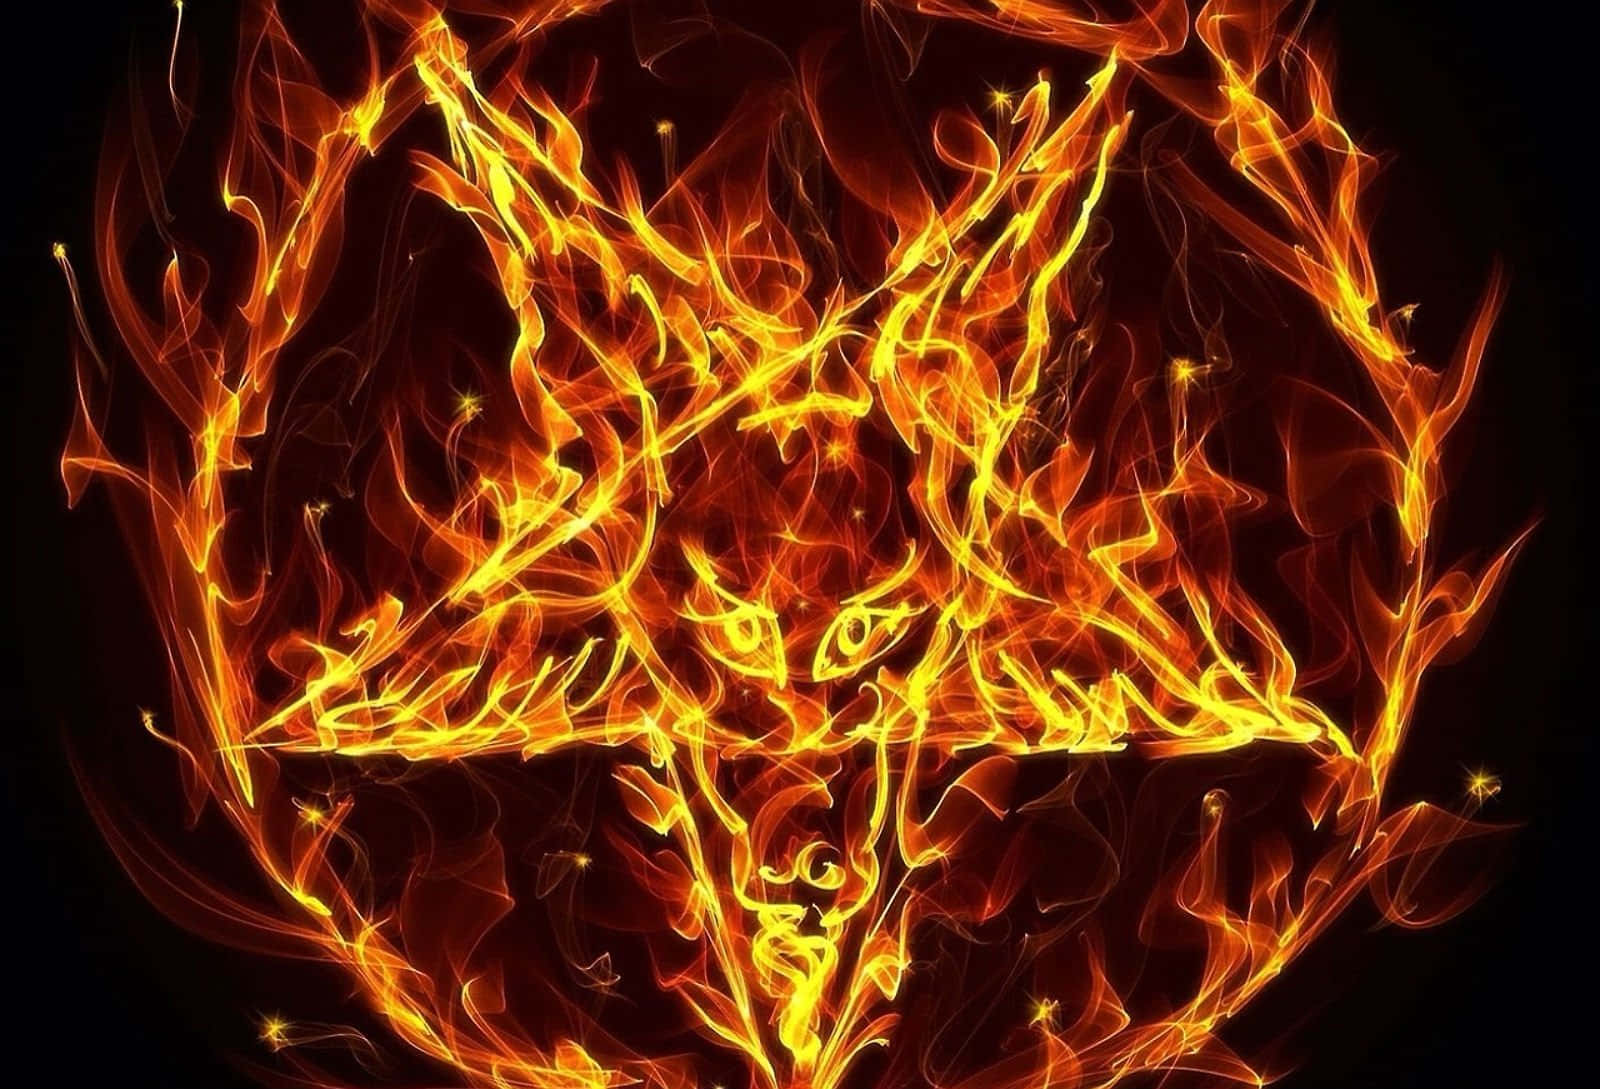 A Pentagram Symbol In Flames On A Black Background